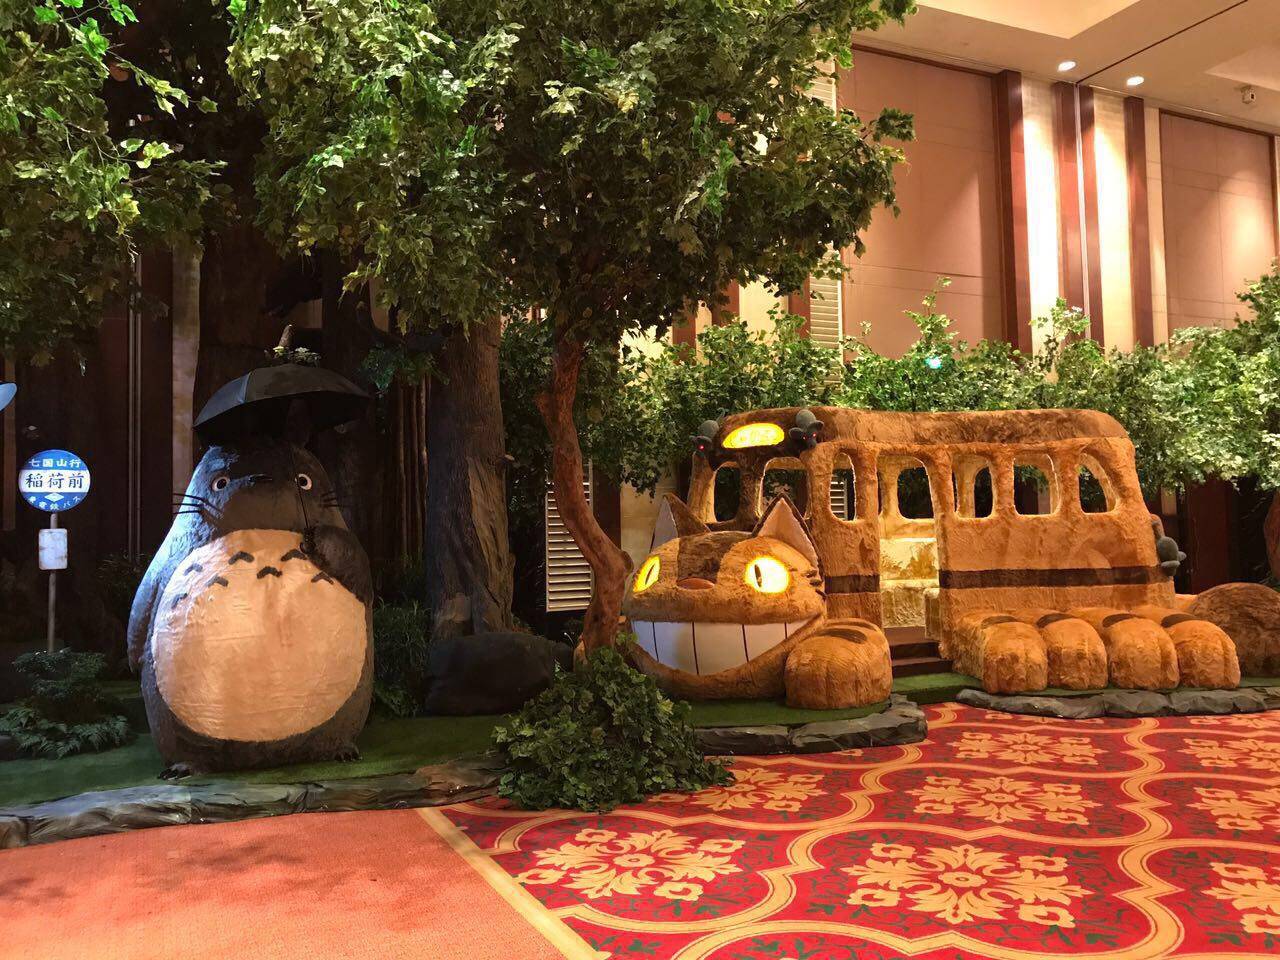 The World of Ghibli Exhibition: Pameran Studio Ghibli Terbesar di Dunia & Pertama di Asia Tenggara